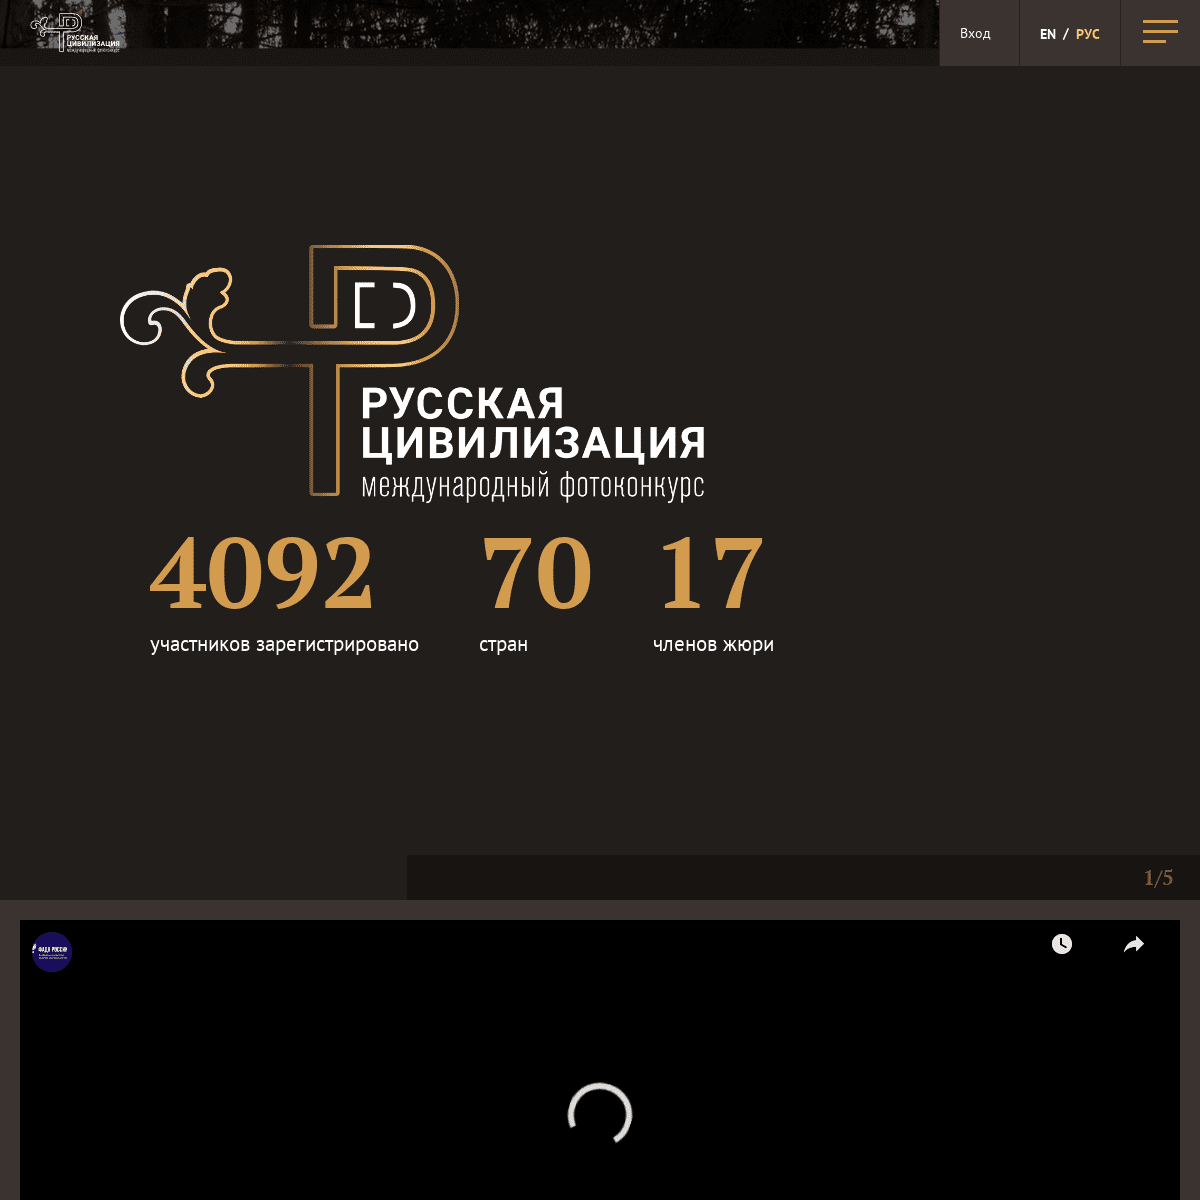 A complete backup of ruscivilization.ru